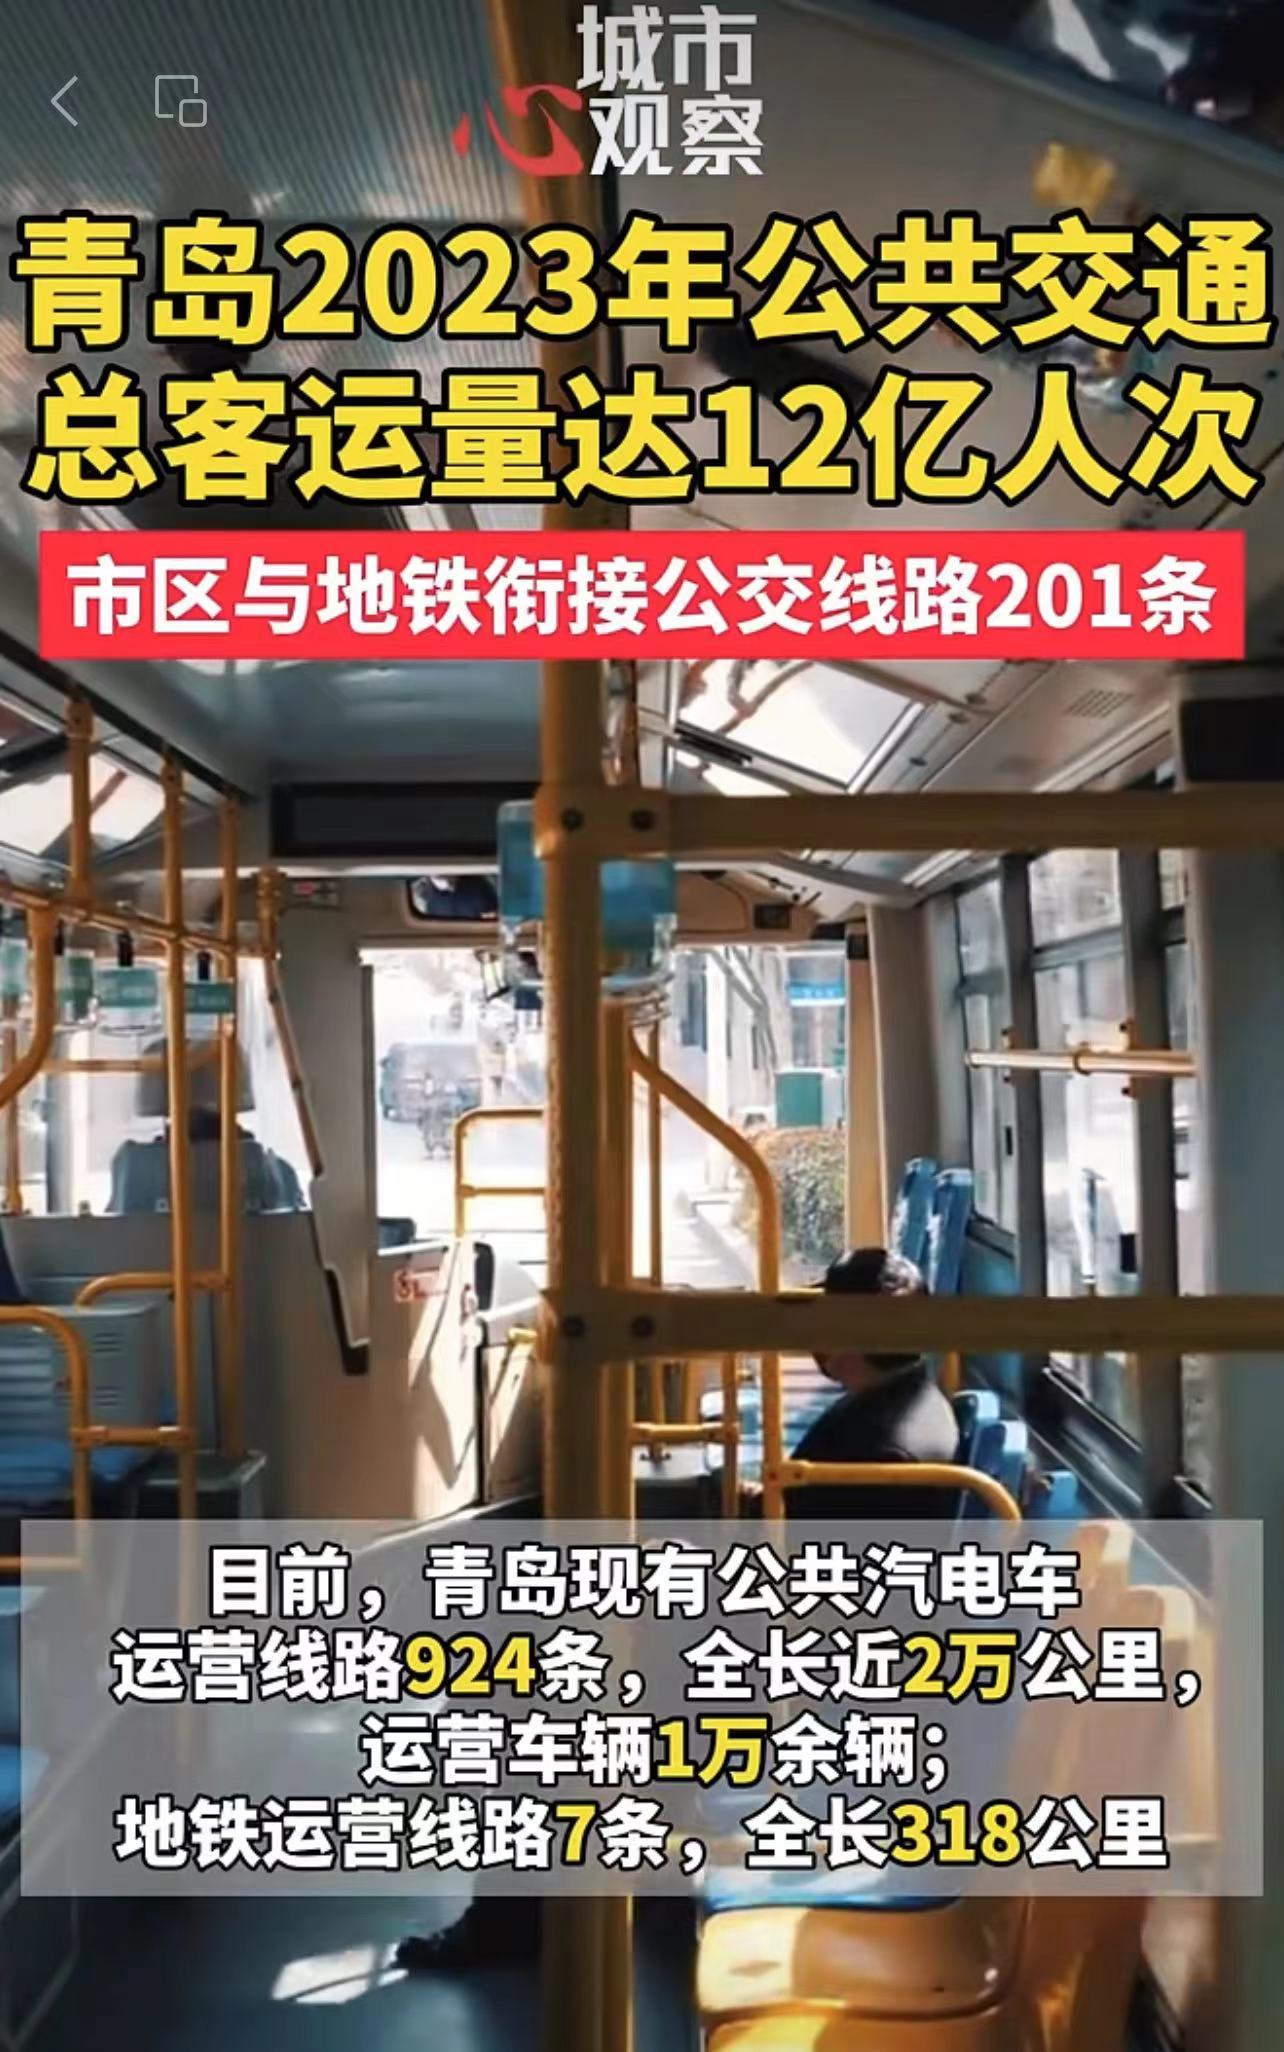 青岛2023年公共交通总客运量达12亿人次